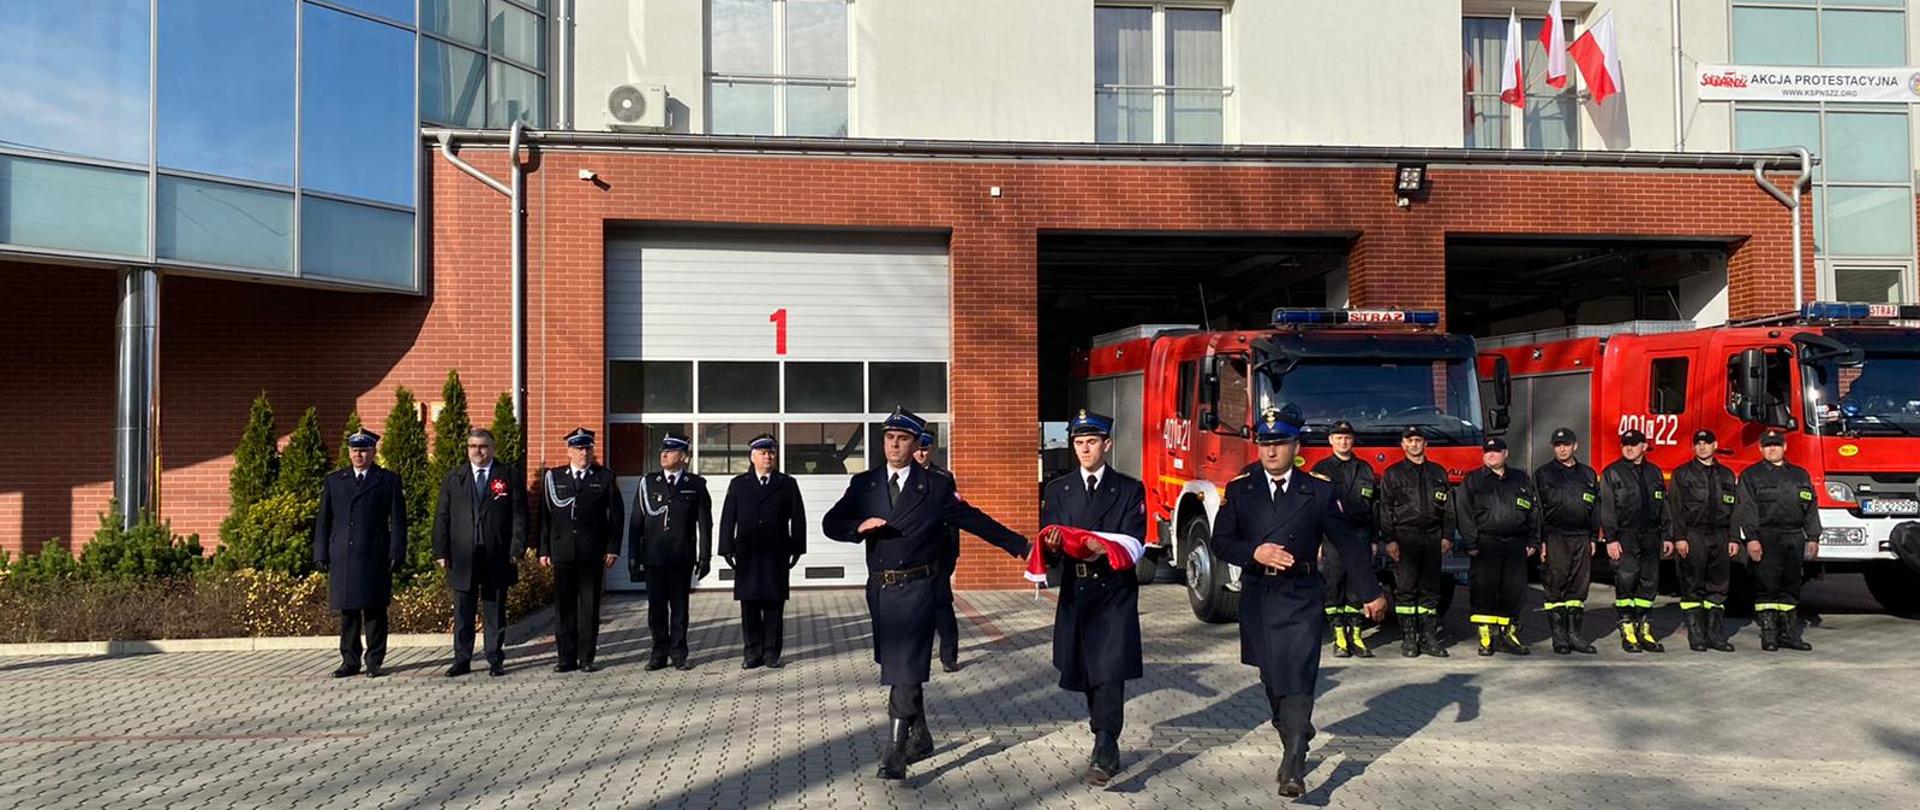 Zdjęcie przedstawia strażaków z Państwowej i Ochotniczej Straży Pożarnej w mundurach wyjściowych, strażaków ubranych ubrania koszarowe, koloru czarnego. OSP. W tle znajdują się samochody pożarnicze koloru czerwonego, bramy garażowe i budynek strażnicy